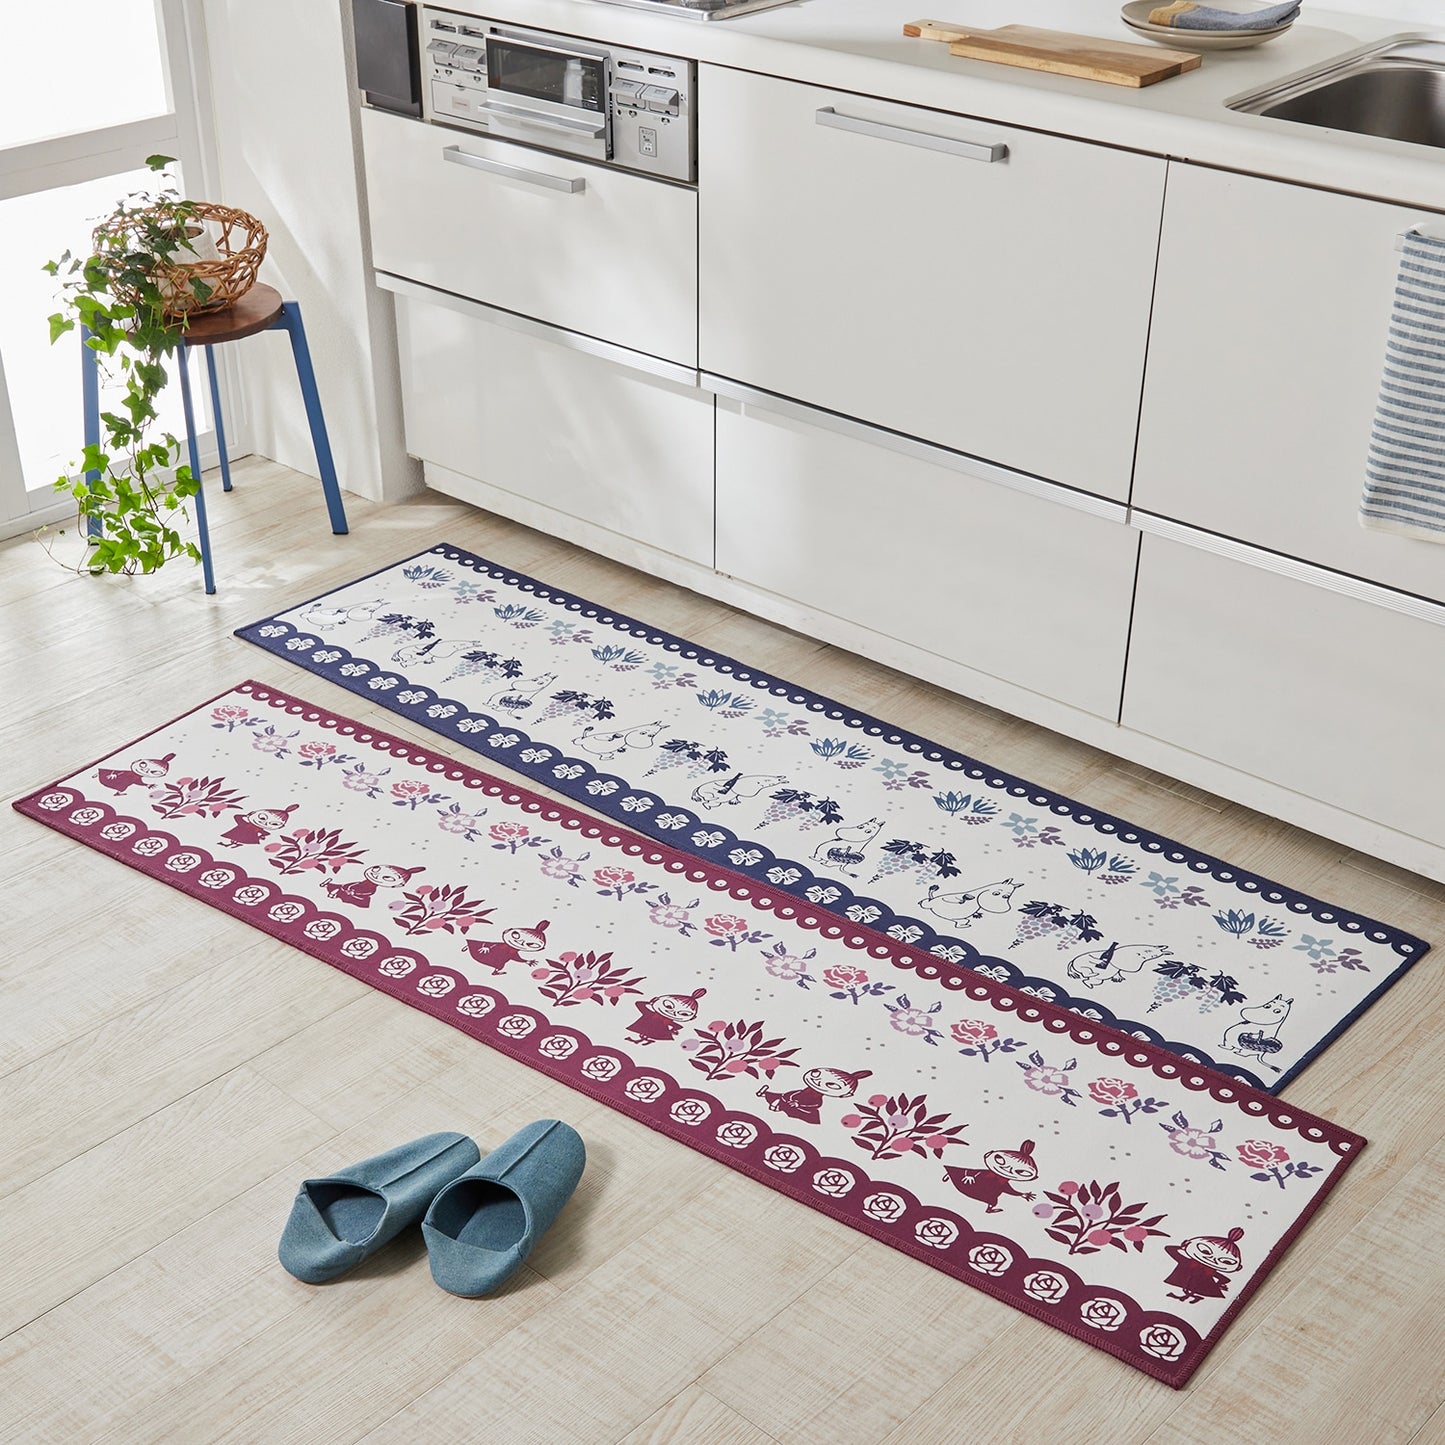  Moomin Fika indoor rug two colors 